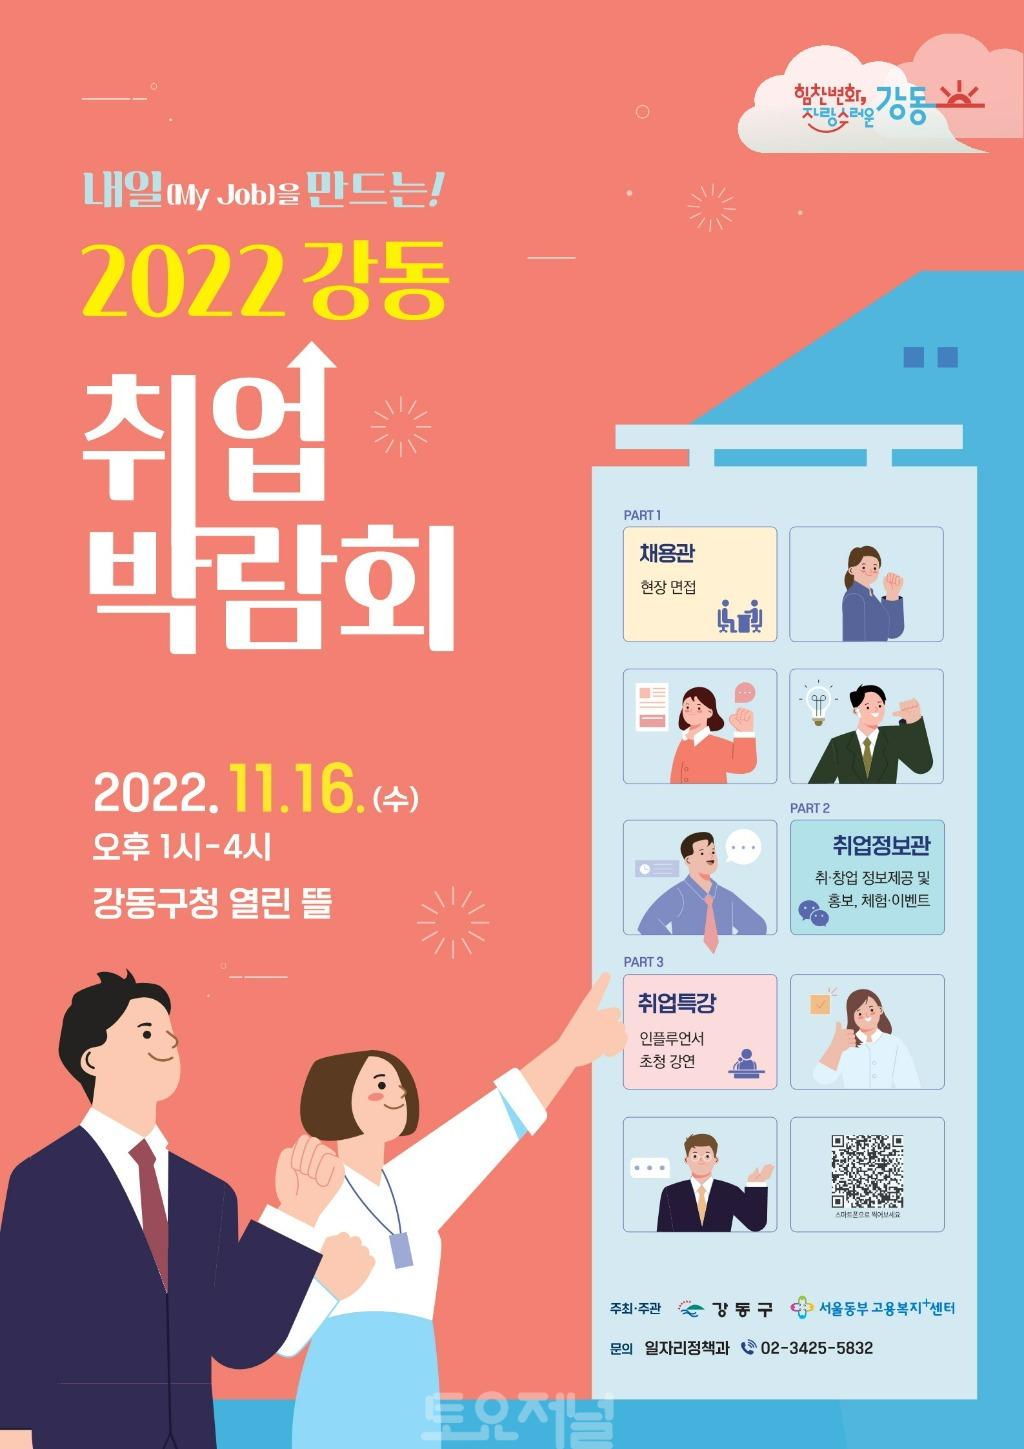 ﻿내일(My Job) 2022. 강동 취업박람회 개최!.jpg